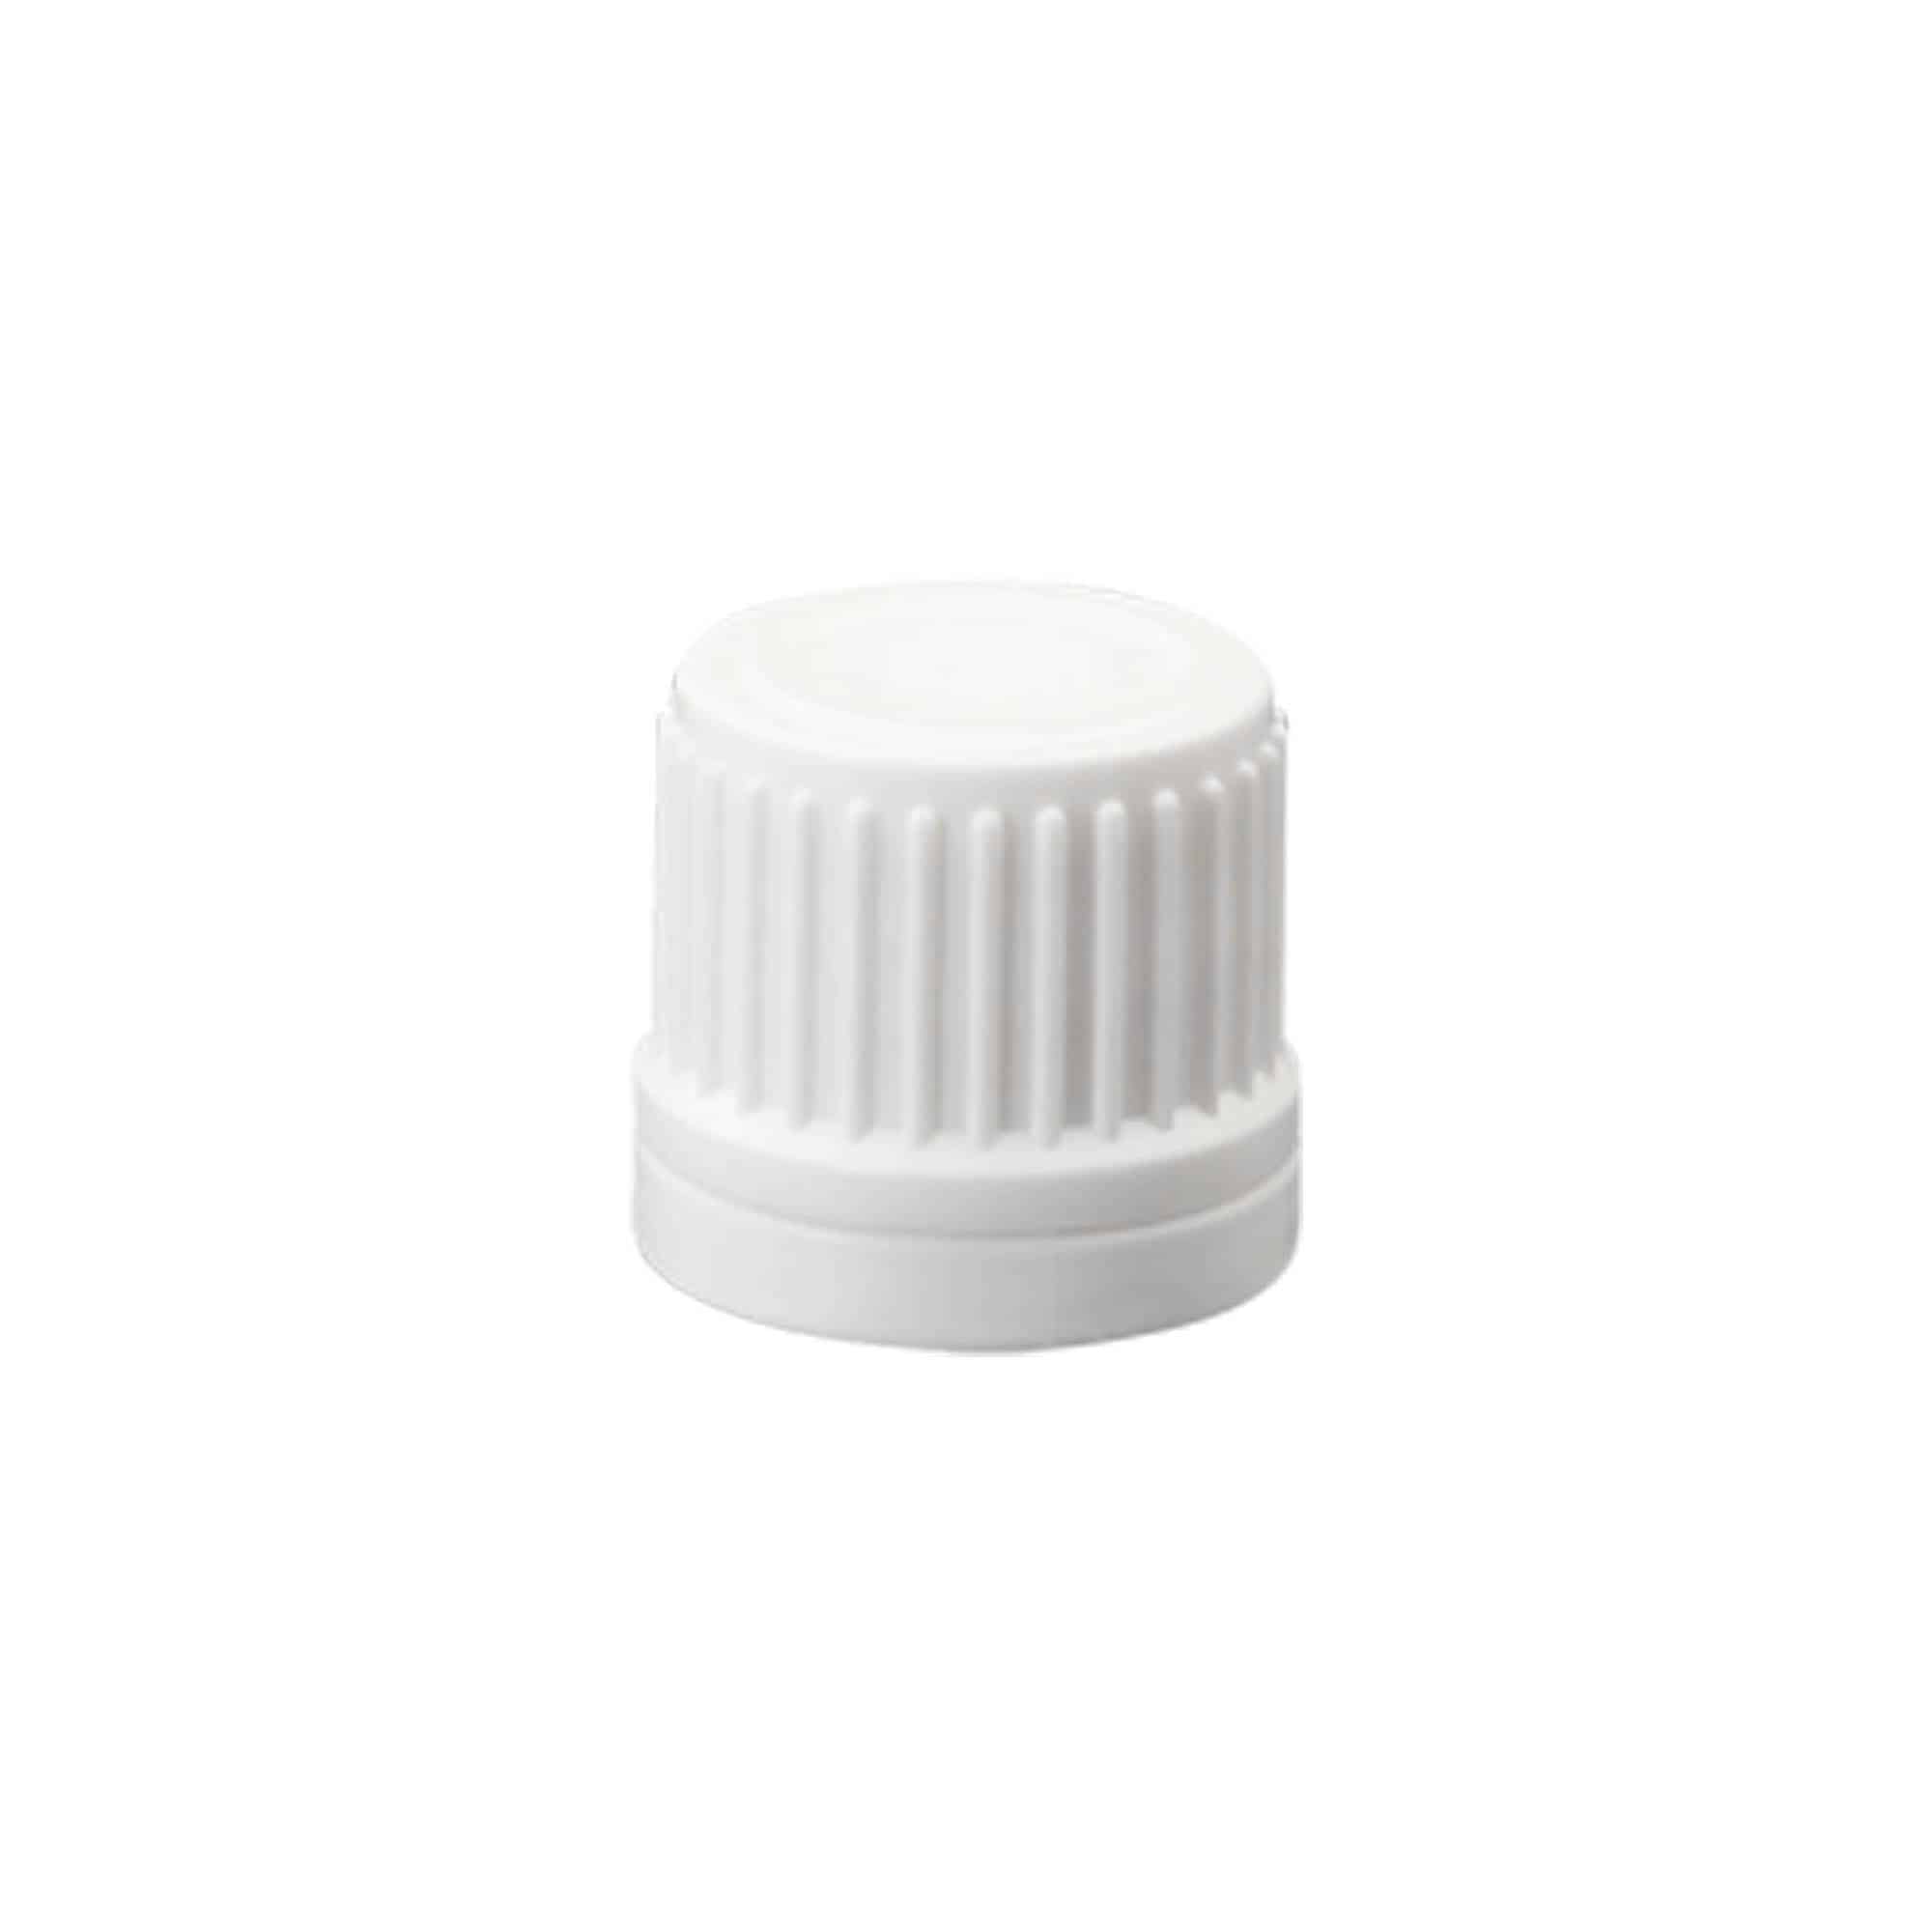 Wkładka do butelki typu roll-on 50 ml, tworzywo sztuczne LDPE, kolor naturalny